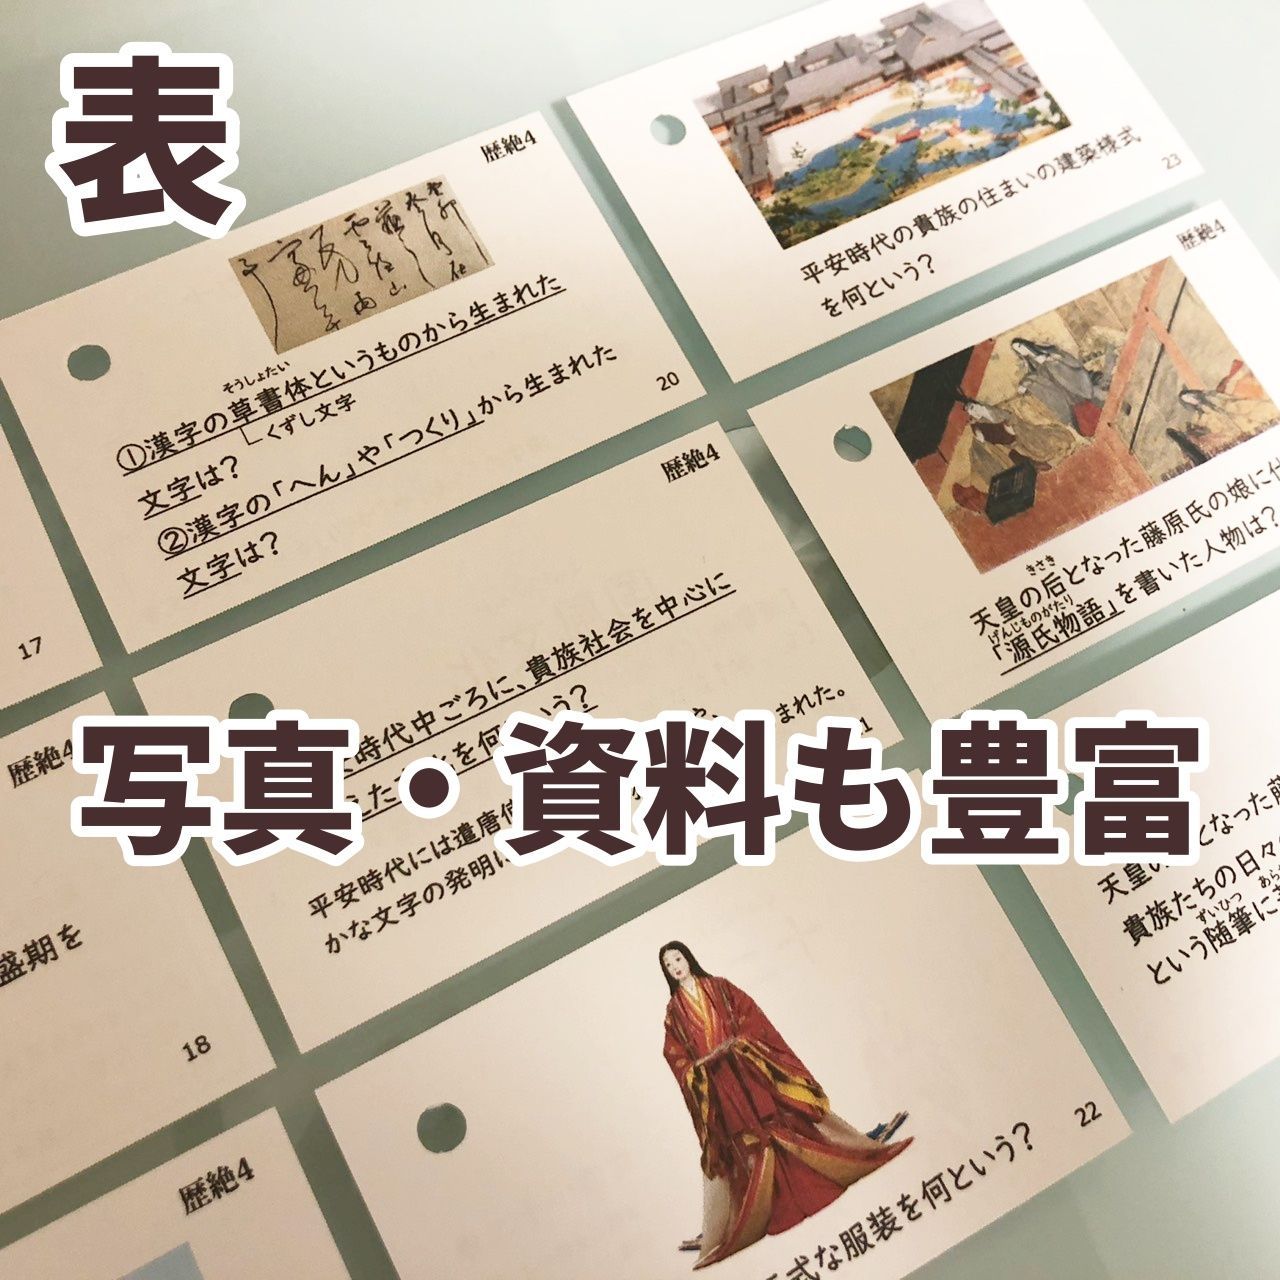 中学受験 実力UP歴史カード 暗記カード 中学入試 予習シリーズ - メルカリ